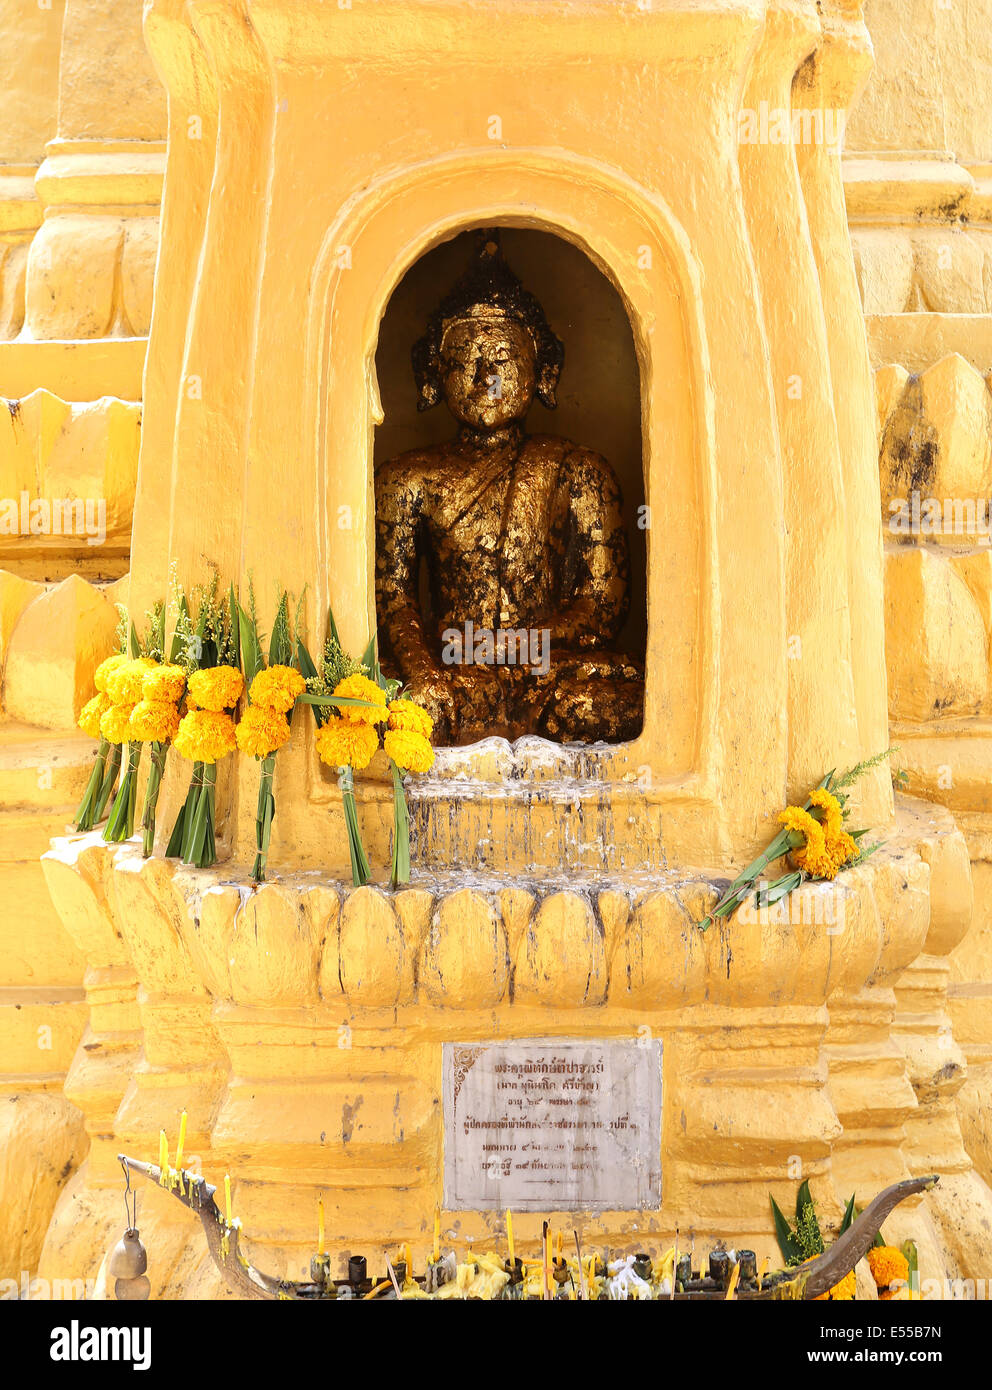 Un temple antique à Ayutthaya en Thaïlande Banque D'Images